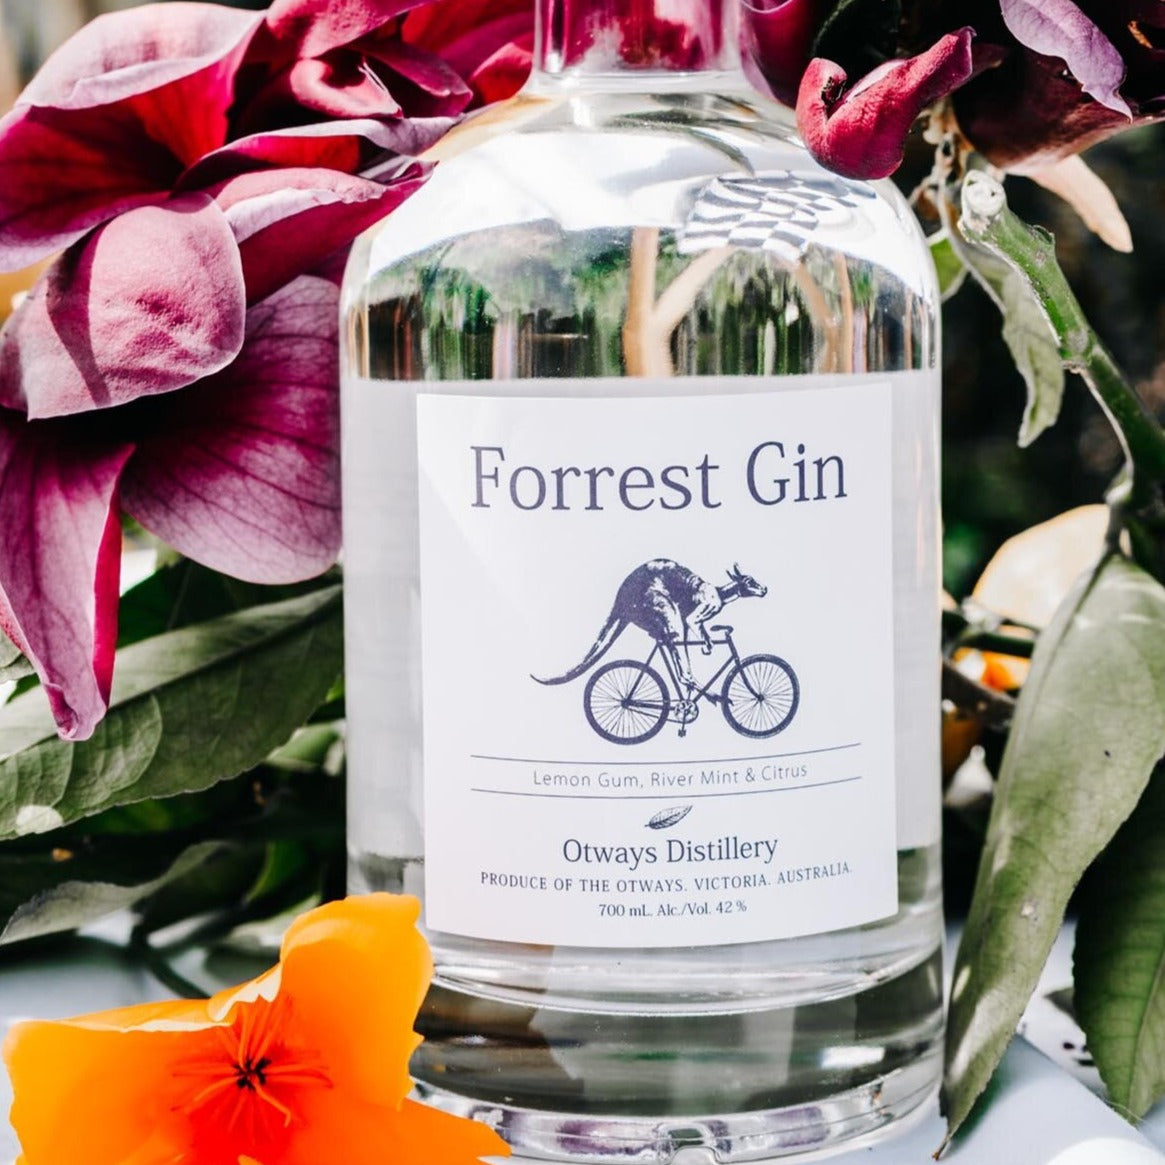 Otways Distillery: Forrest Gin